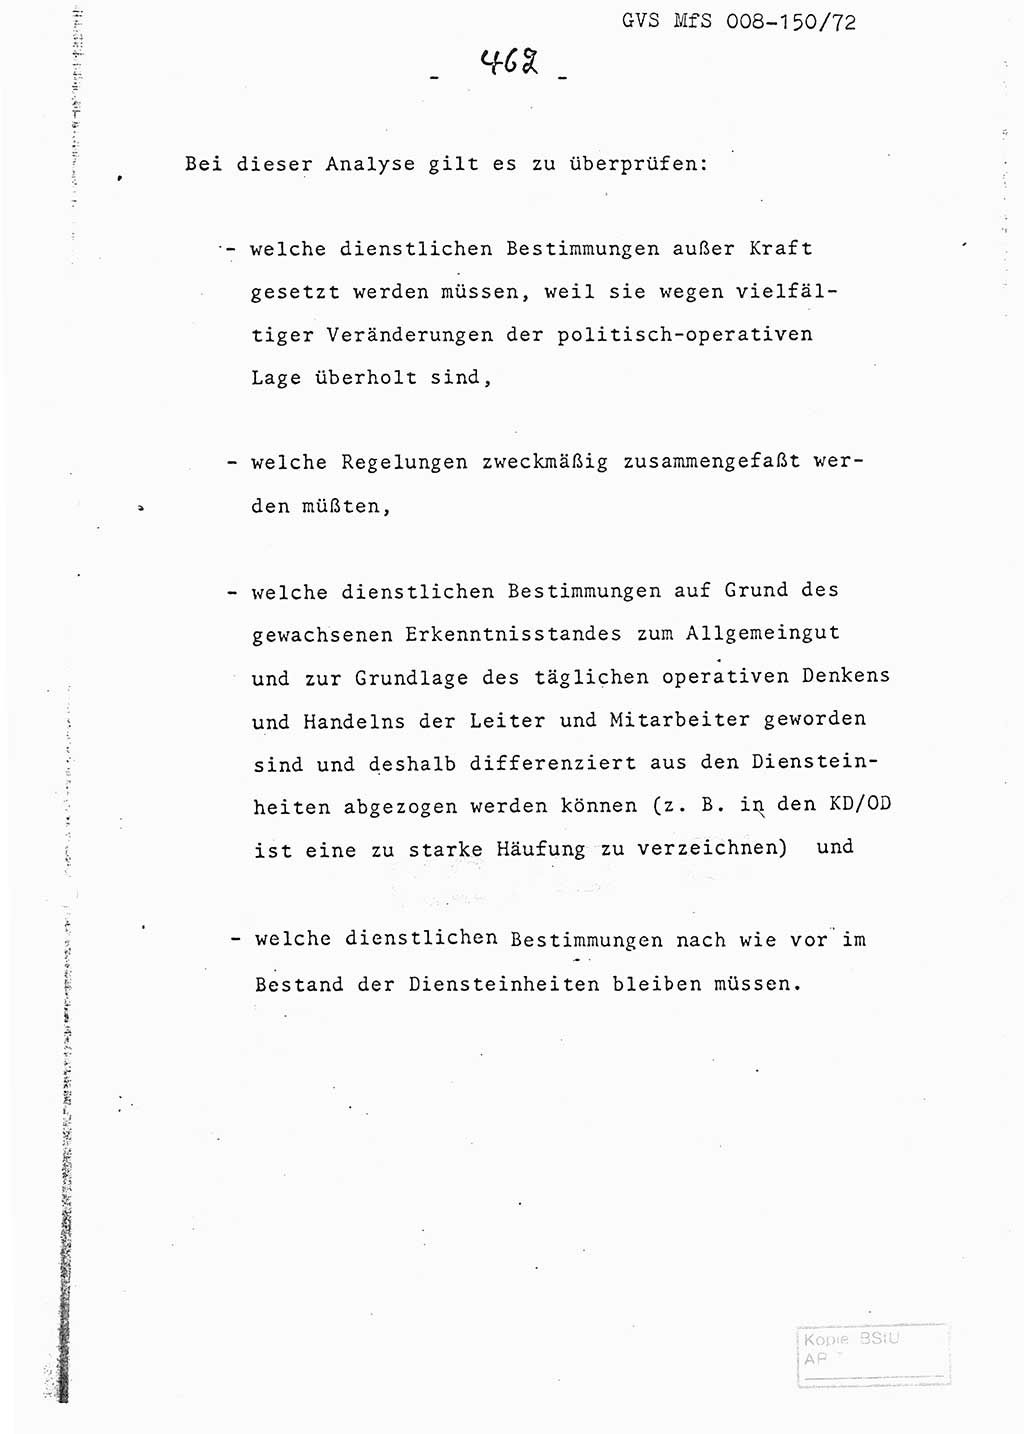 Referat (Entwurf) des Genossen Minister (Generaloberst Erich Mielke) auf der Dienstkonferenz 1972, Ministerium für Staatssicherheit (MfS) [Deutsche Demokratische Republik (DDR)], Der Minister, Geheime Verschlußsache (GVS) 008-150/72, Berlin 25.2.1972, Seite 462 (Ref. Entw. DK MfS DDR Min. GVS 008-150/72 1972, S. 462)